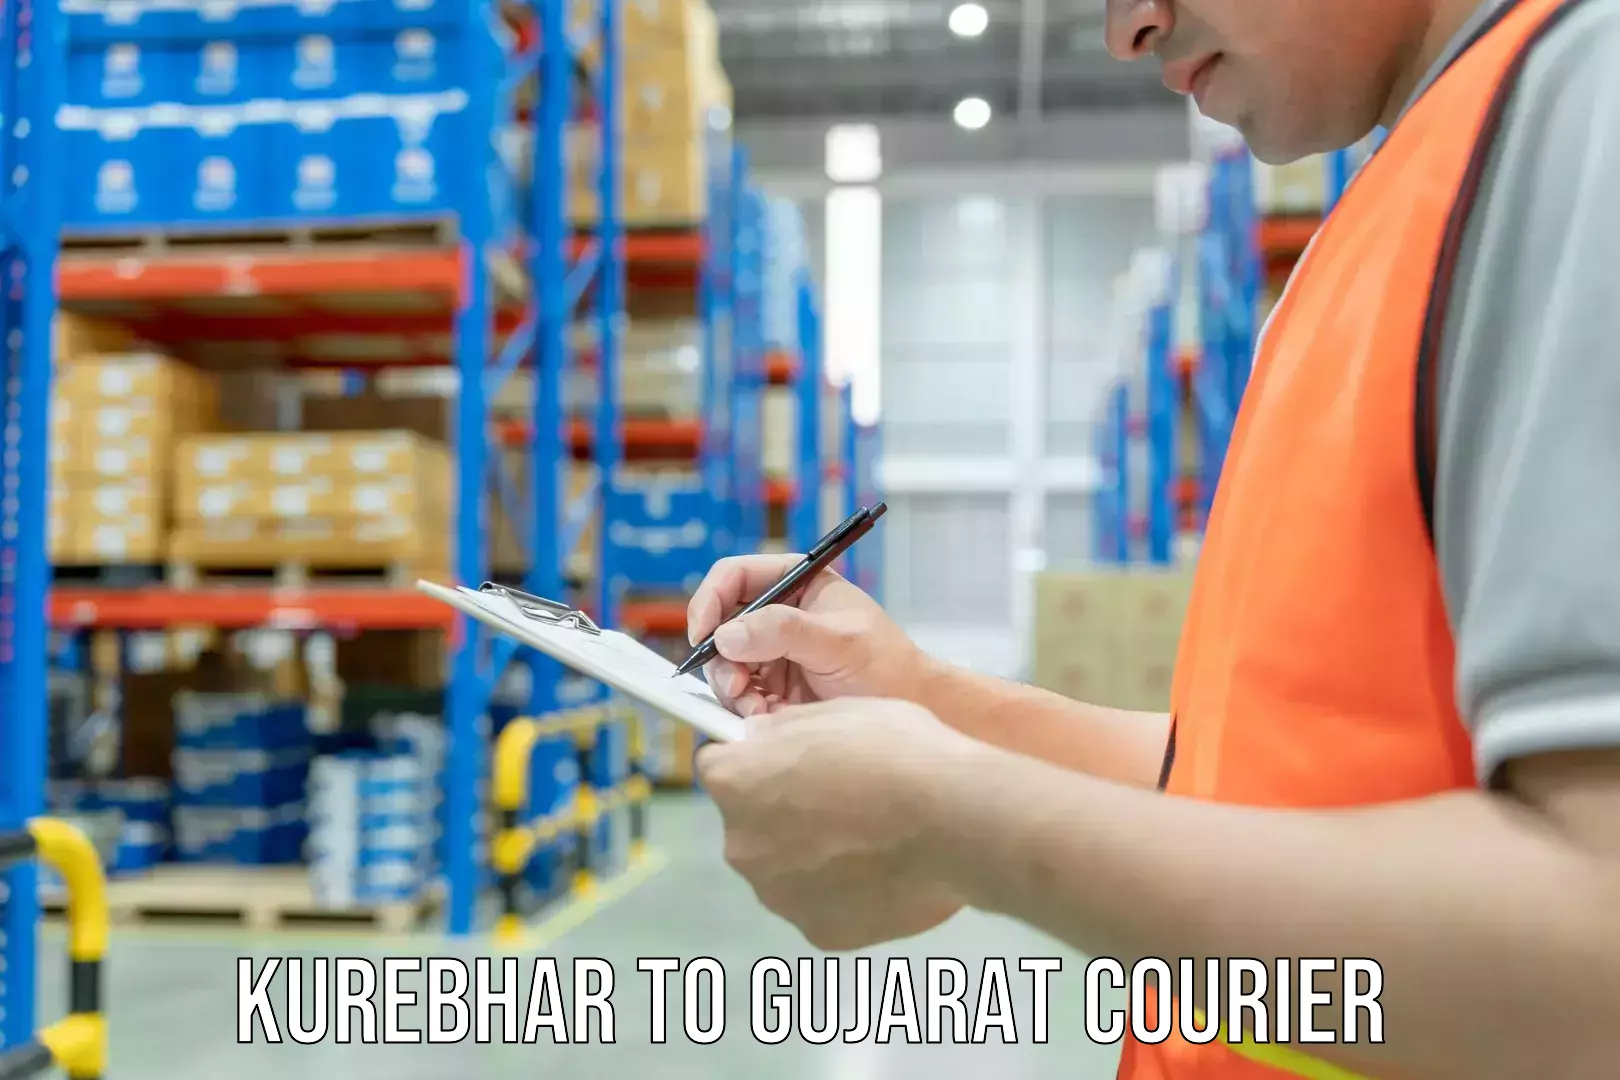 Furniture moving service Kurebhar to Gujarat